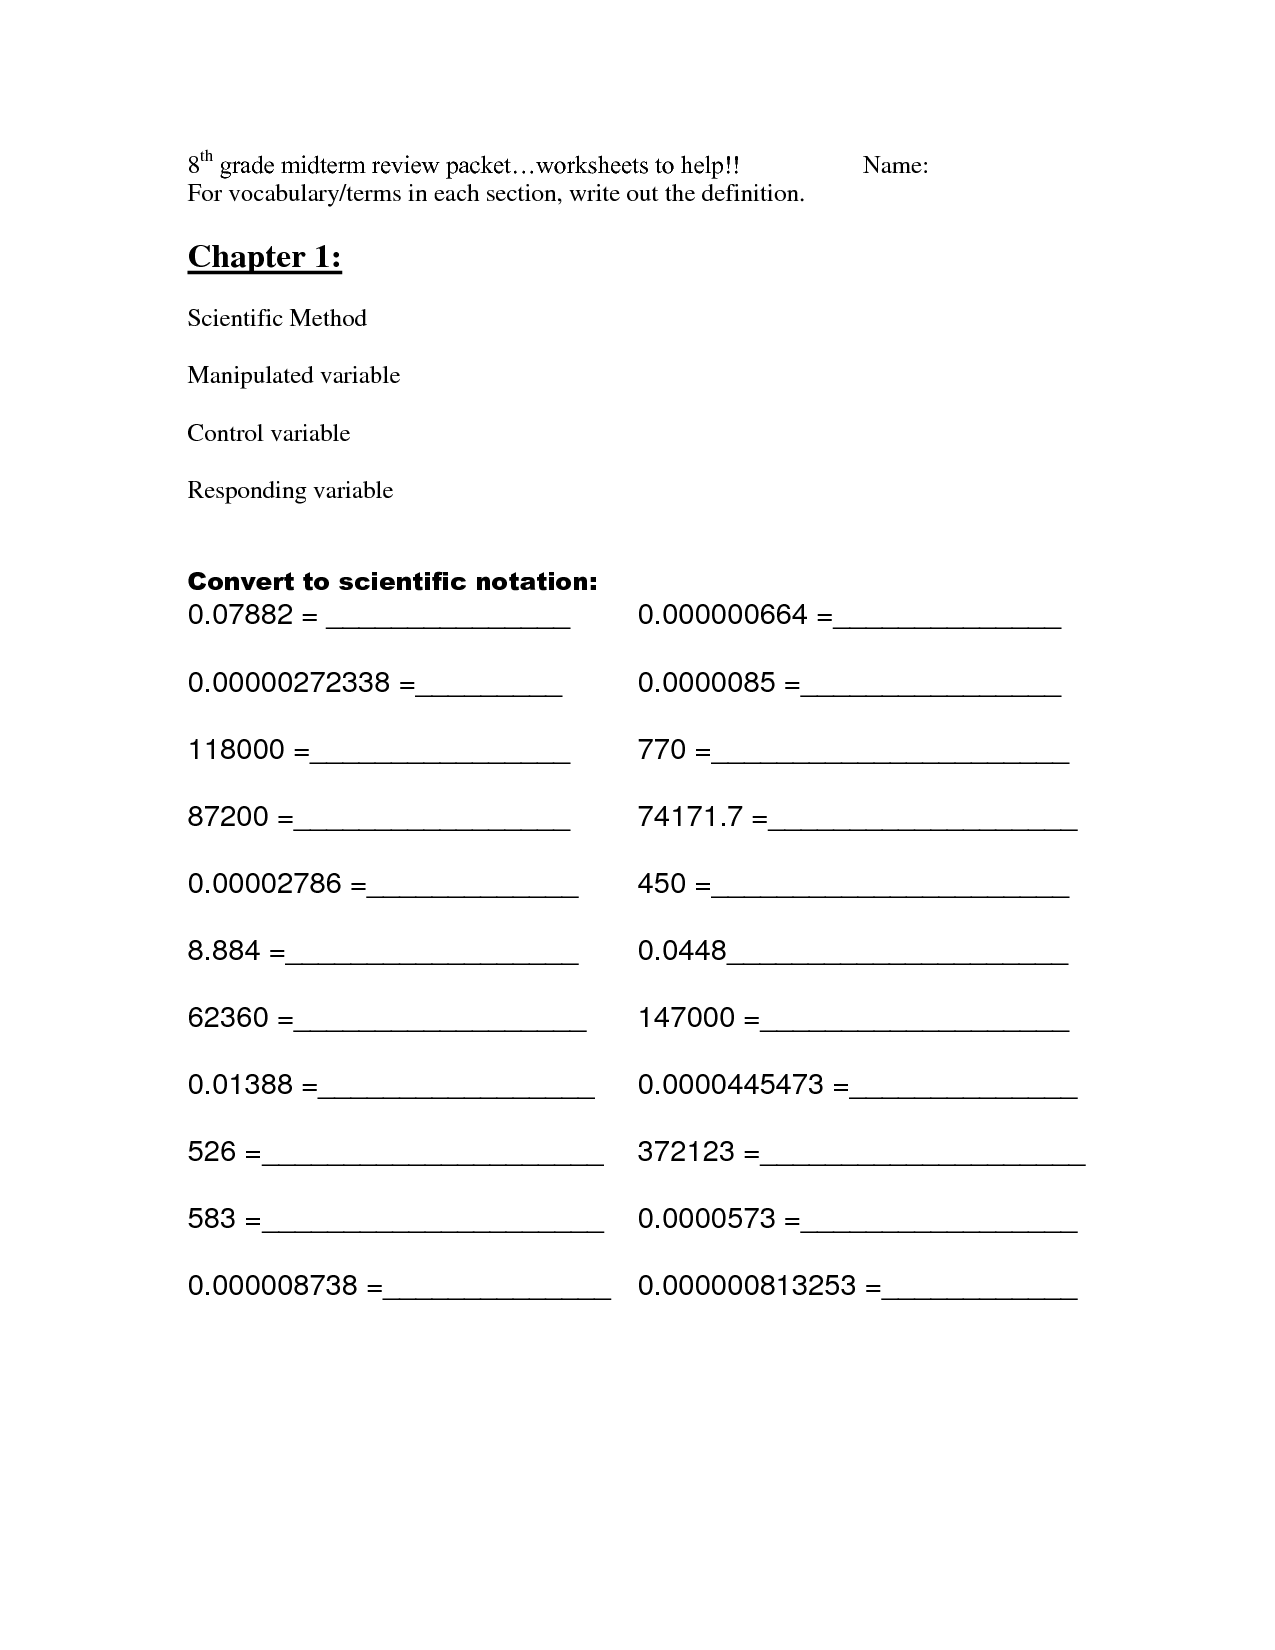 8th Grade English Worksheets Image